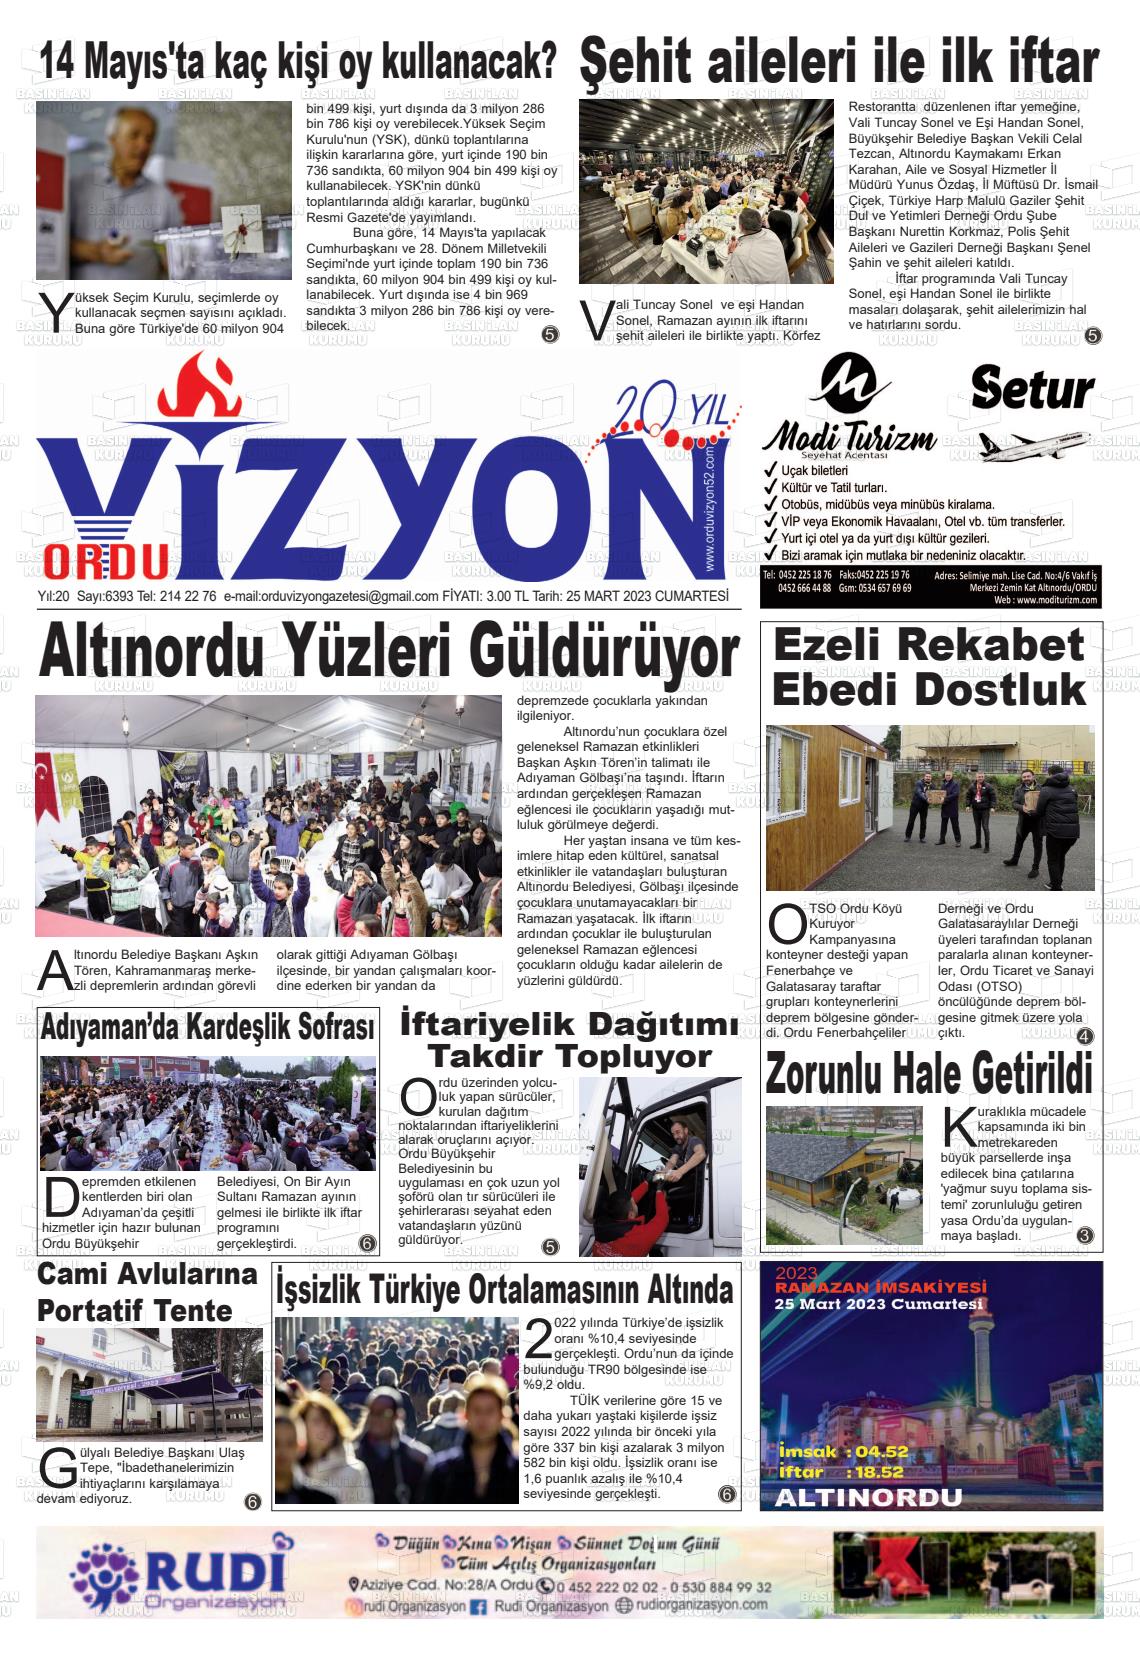 25 Mart 2023 Ordu Vizyon Gazete Manşeti